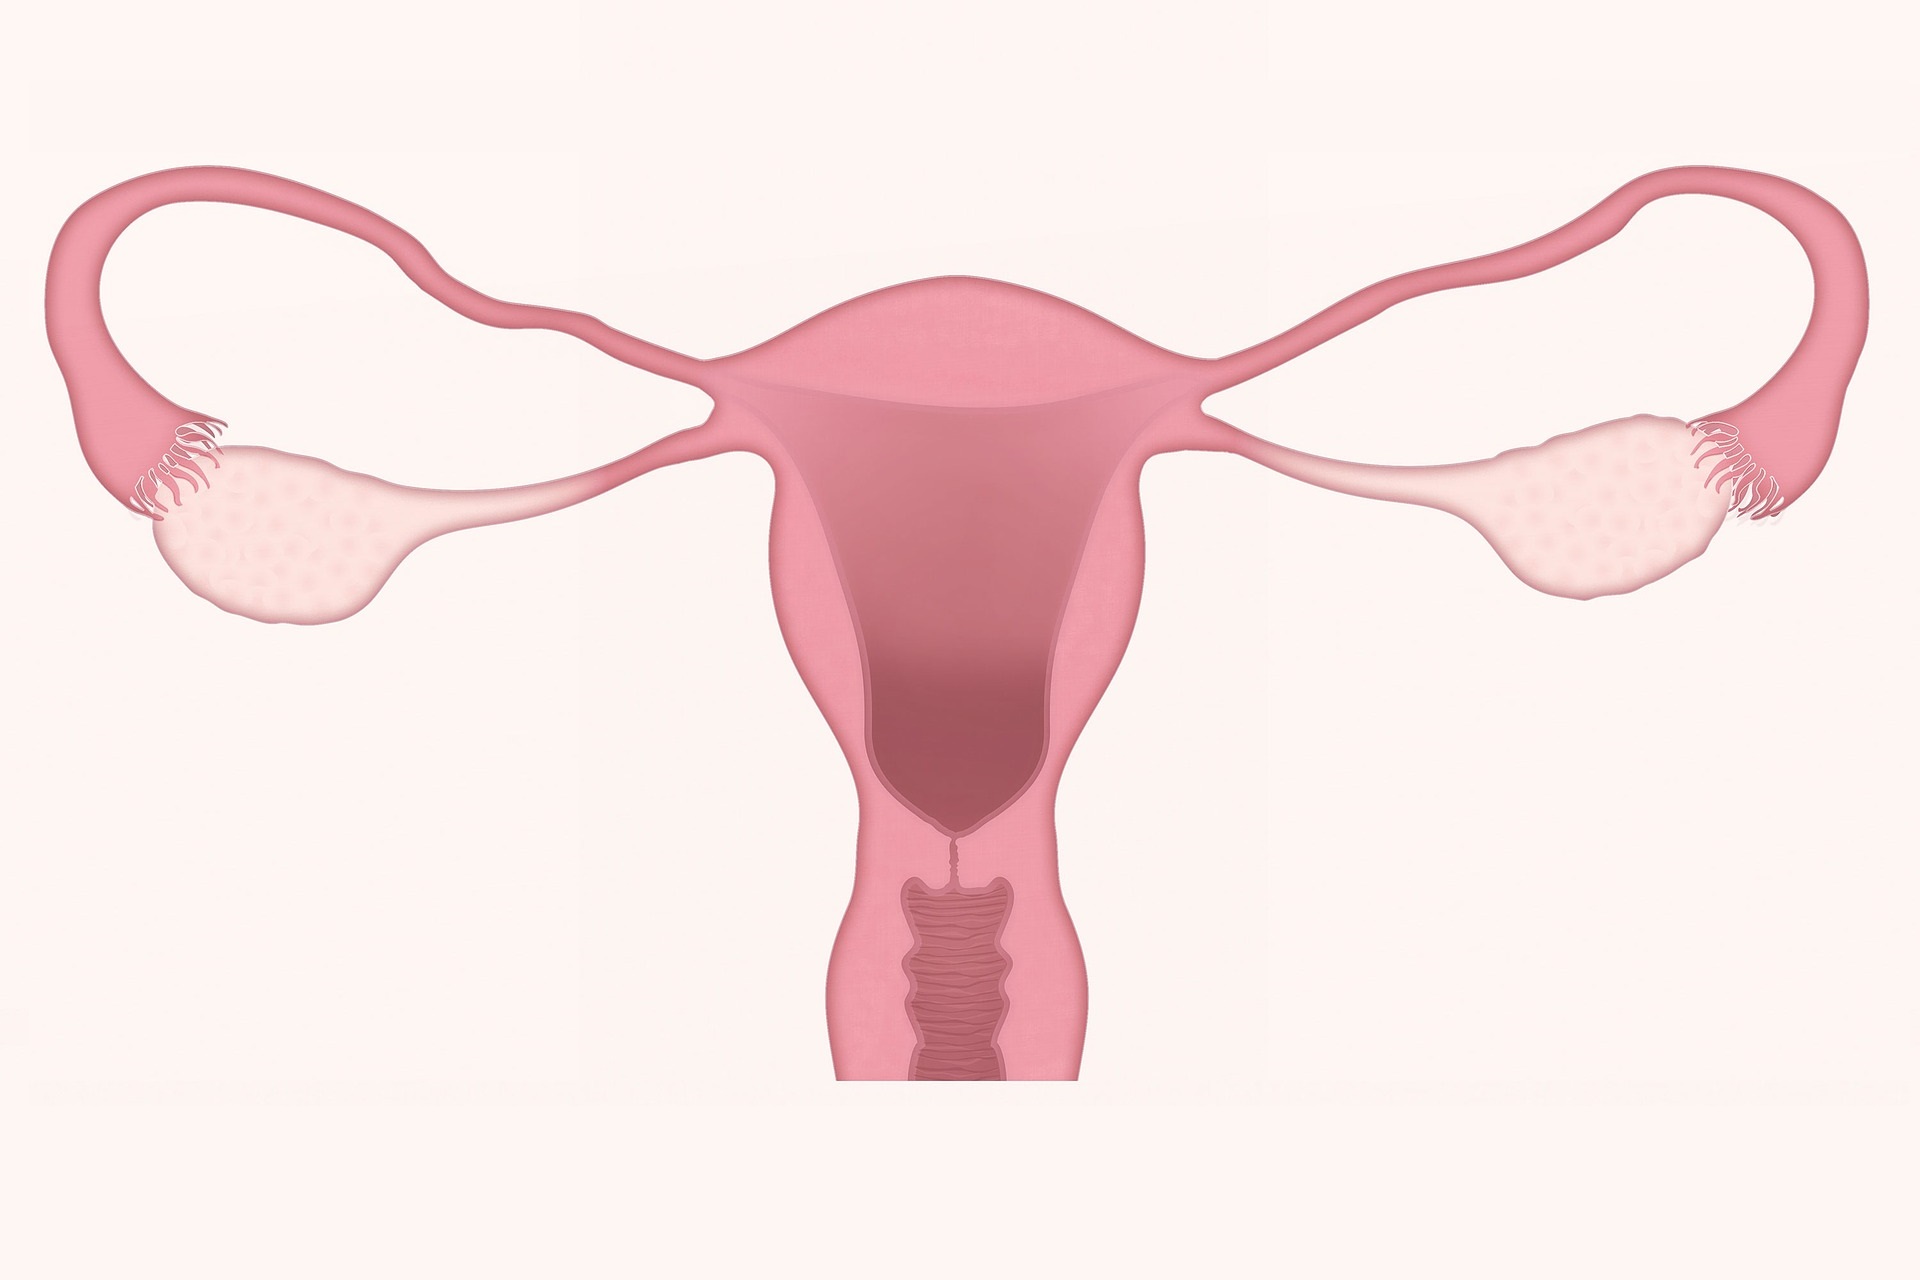 Biopsja aspiracyjna endometrium - na czym polega i jak się ją przeprowadza?